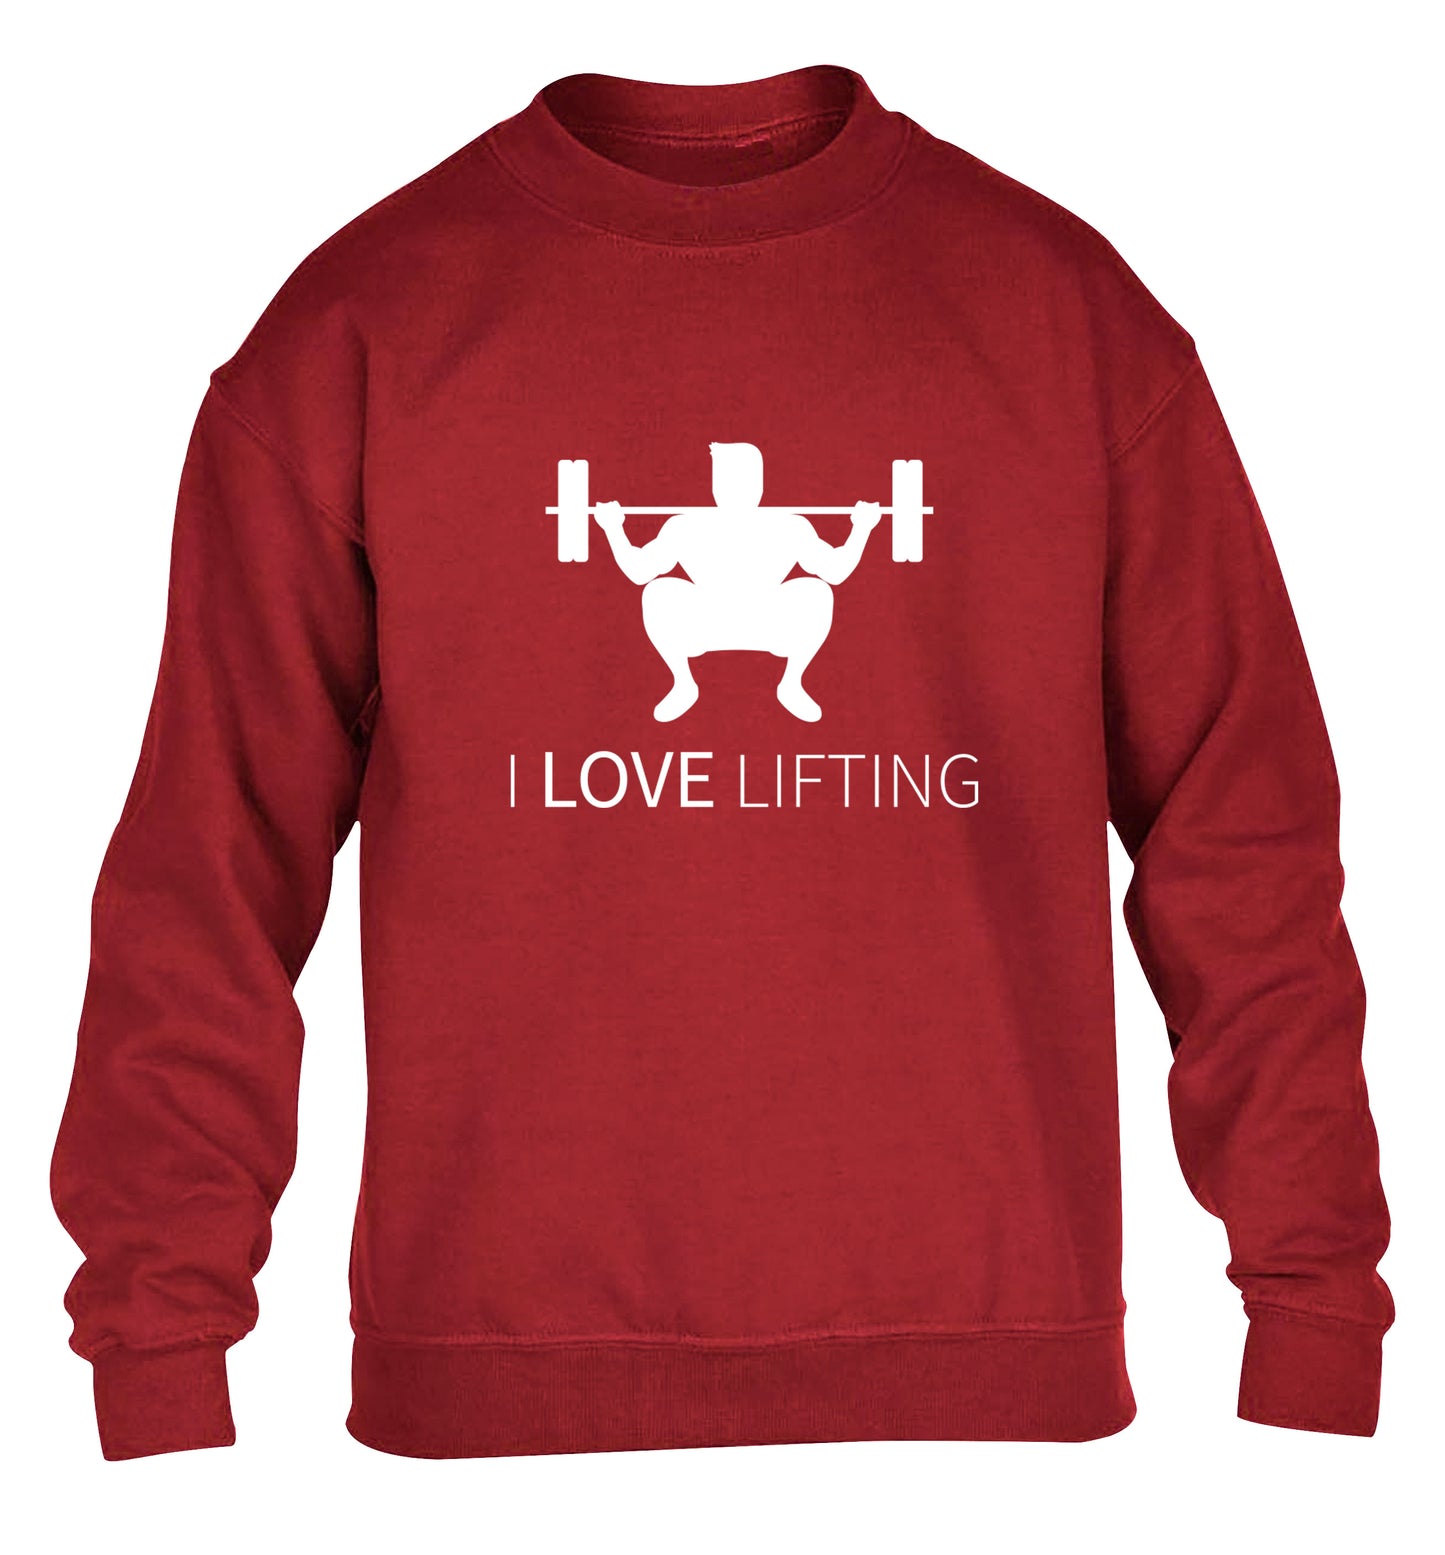 I Love Lifting children's grey sweater 12-13 Years